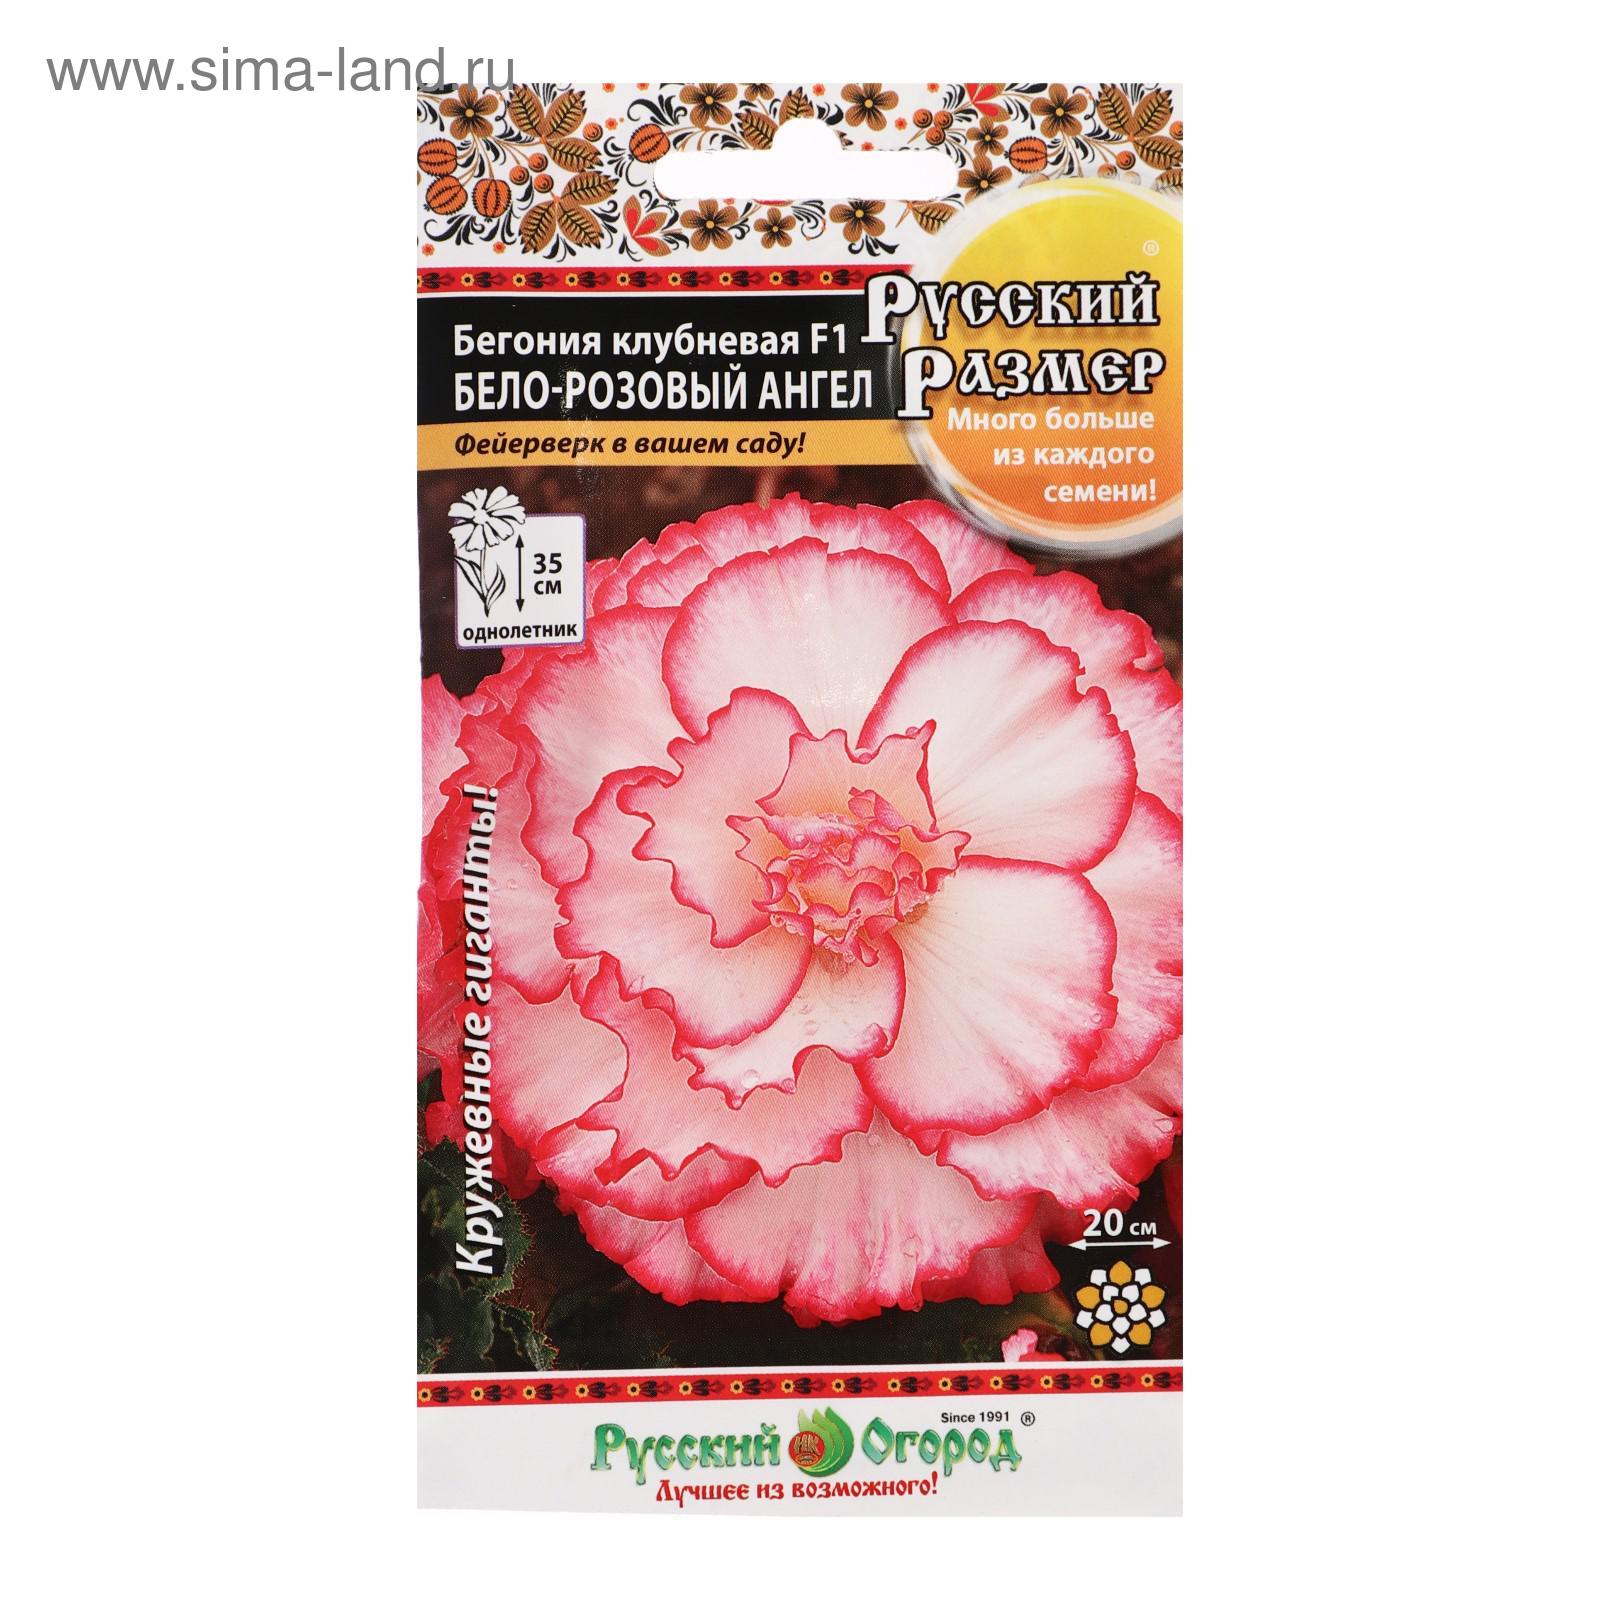 Семена цветов Бегония клубневая "Бело-розовый ангел", F1, серия Русский размер, 5 шт (5431359) - Купить по цене от 59.00 руб.